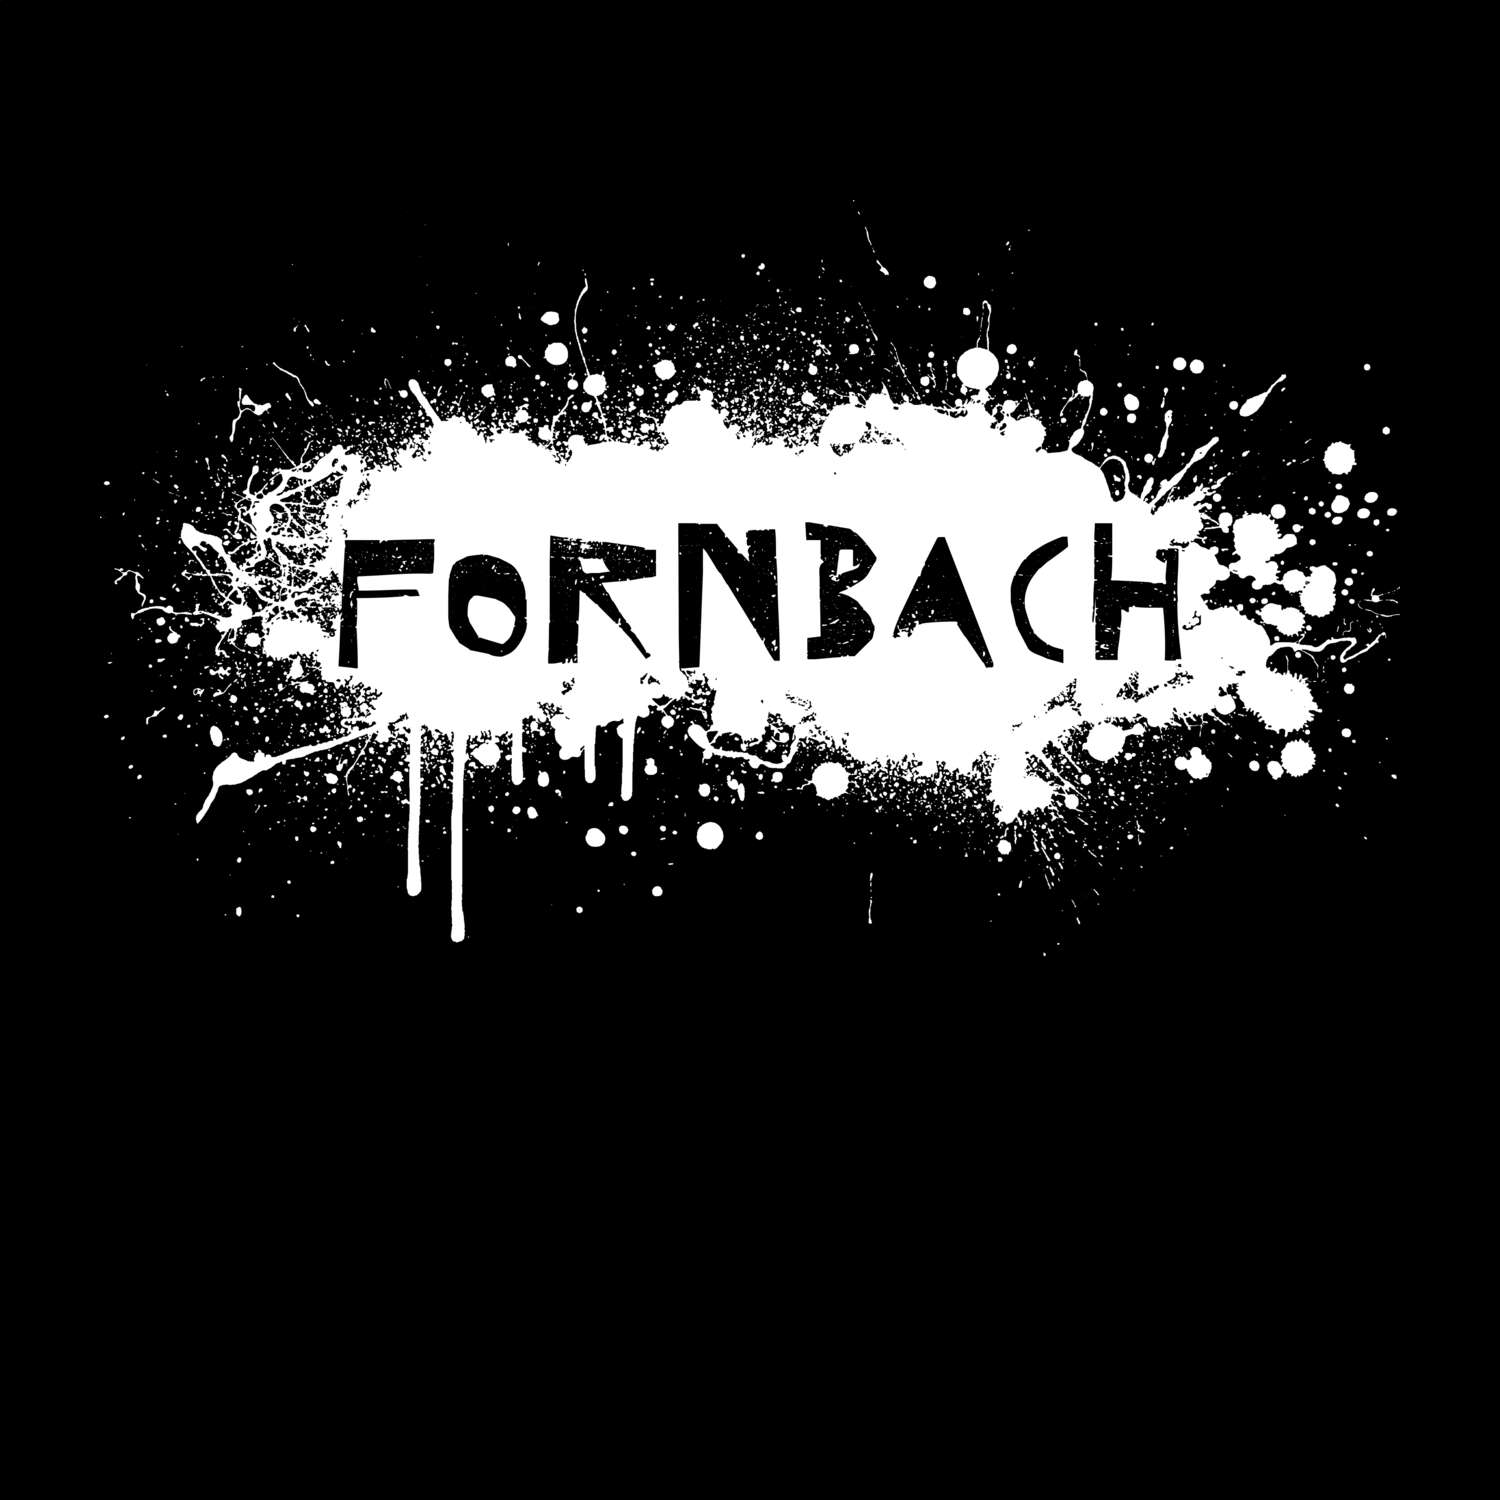 Fornbach T-Shirt »Paint Splash Punk«